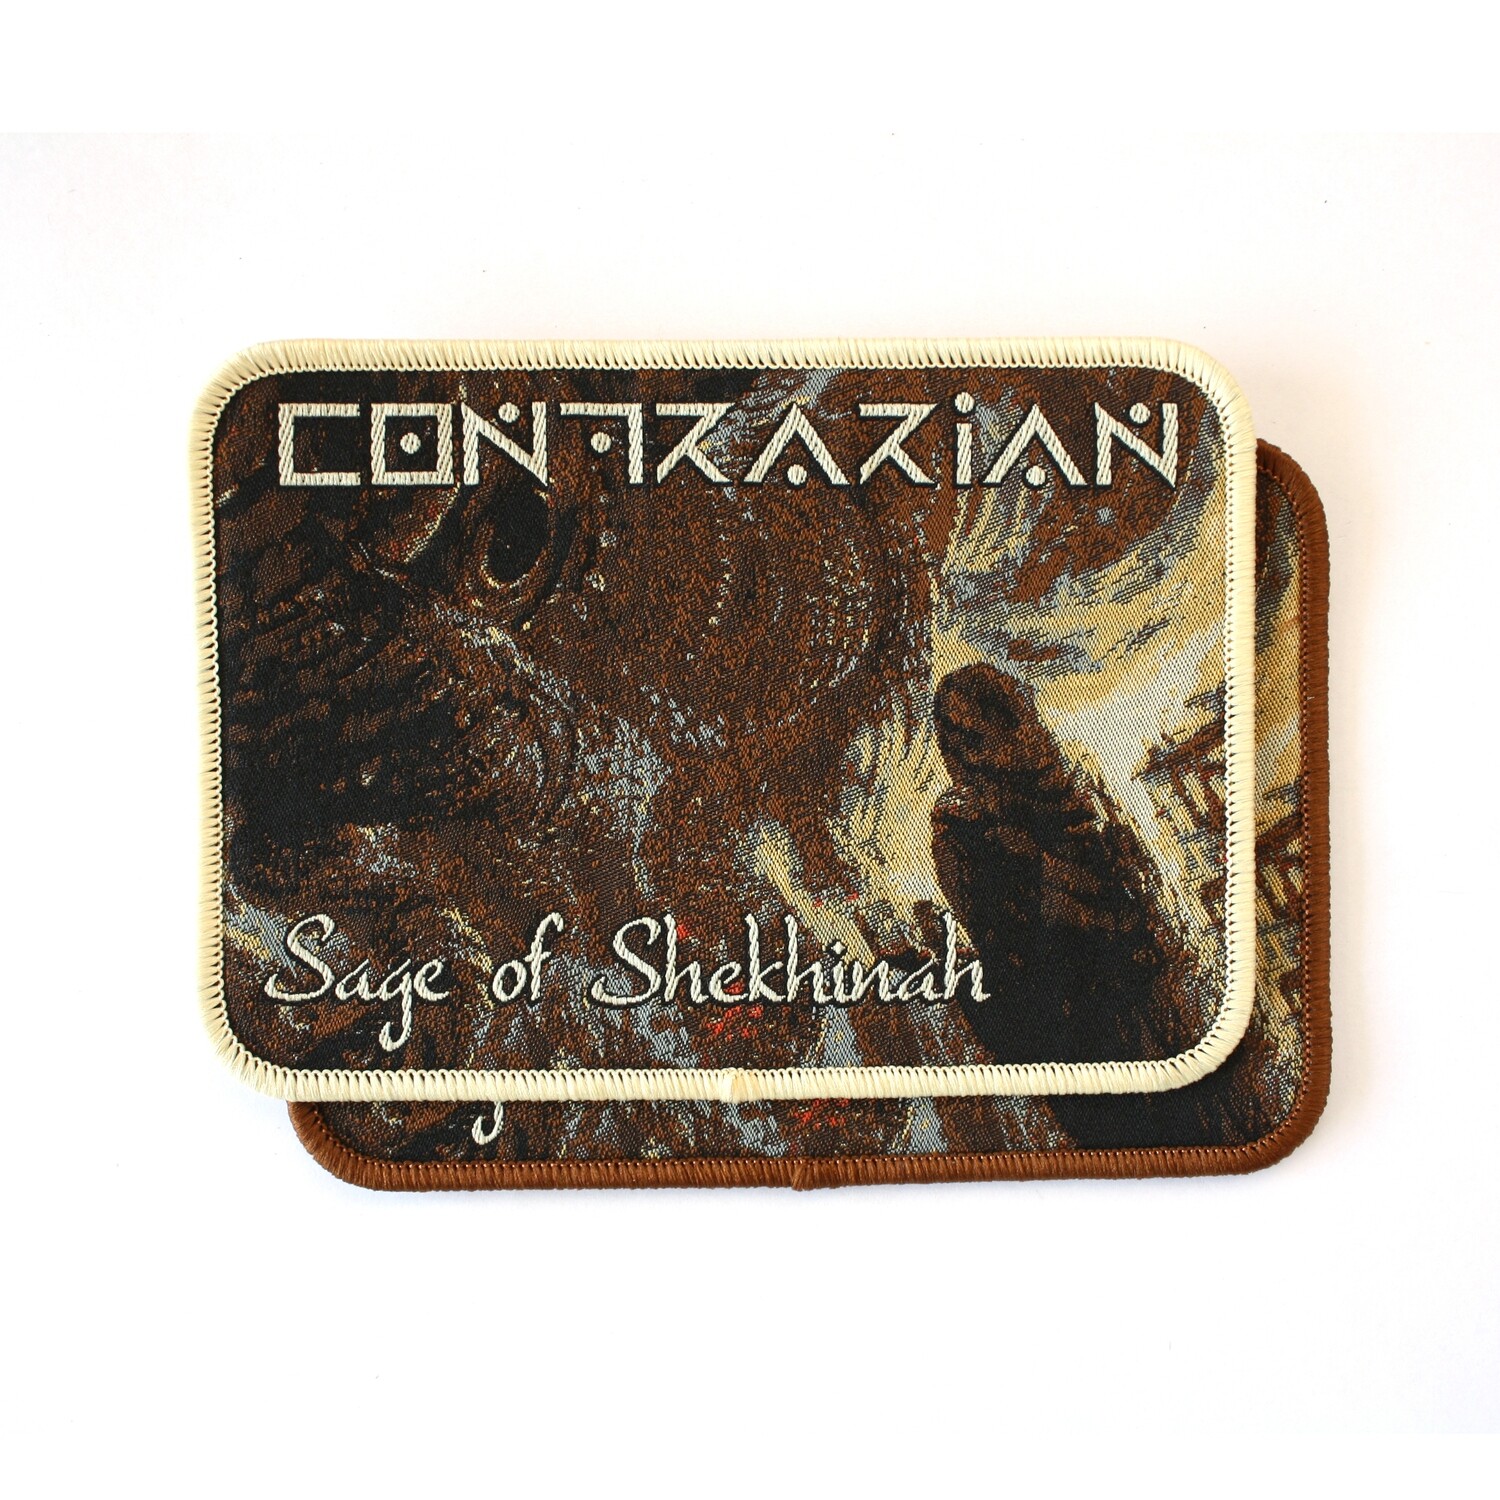 Contrarian - Sage of Shekhinah